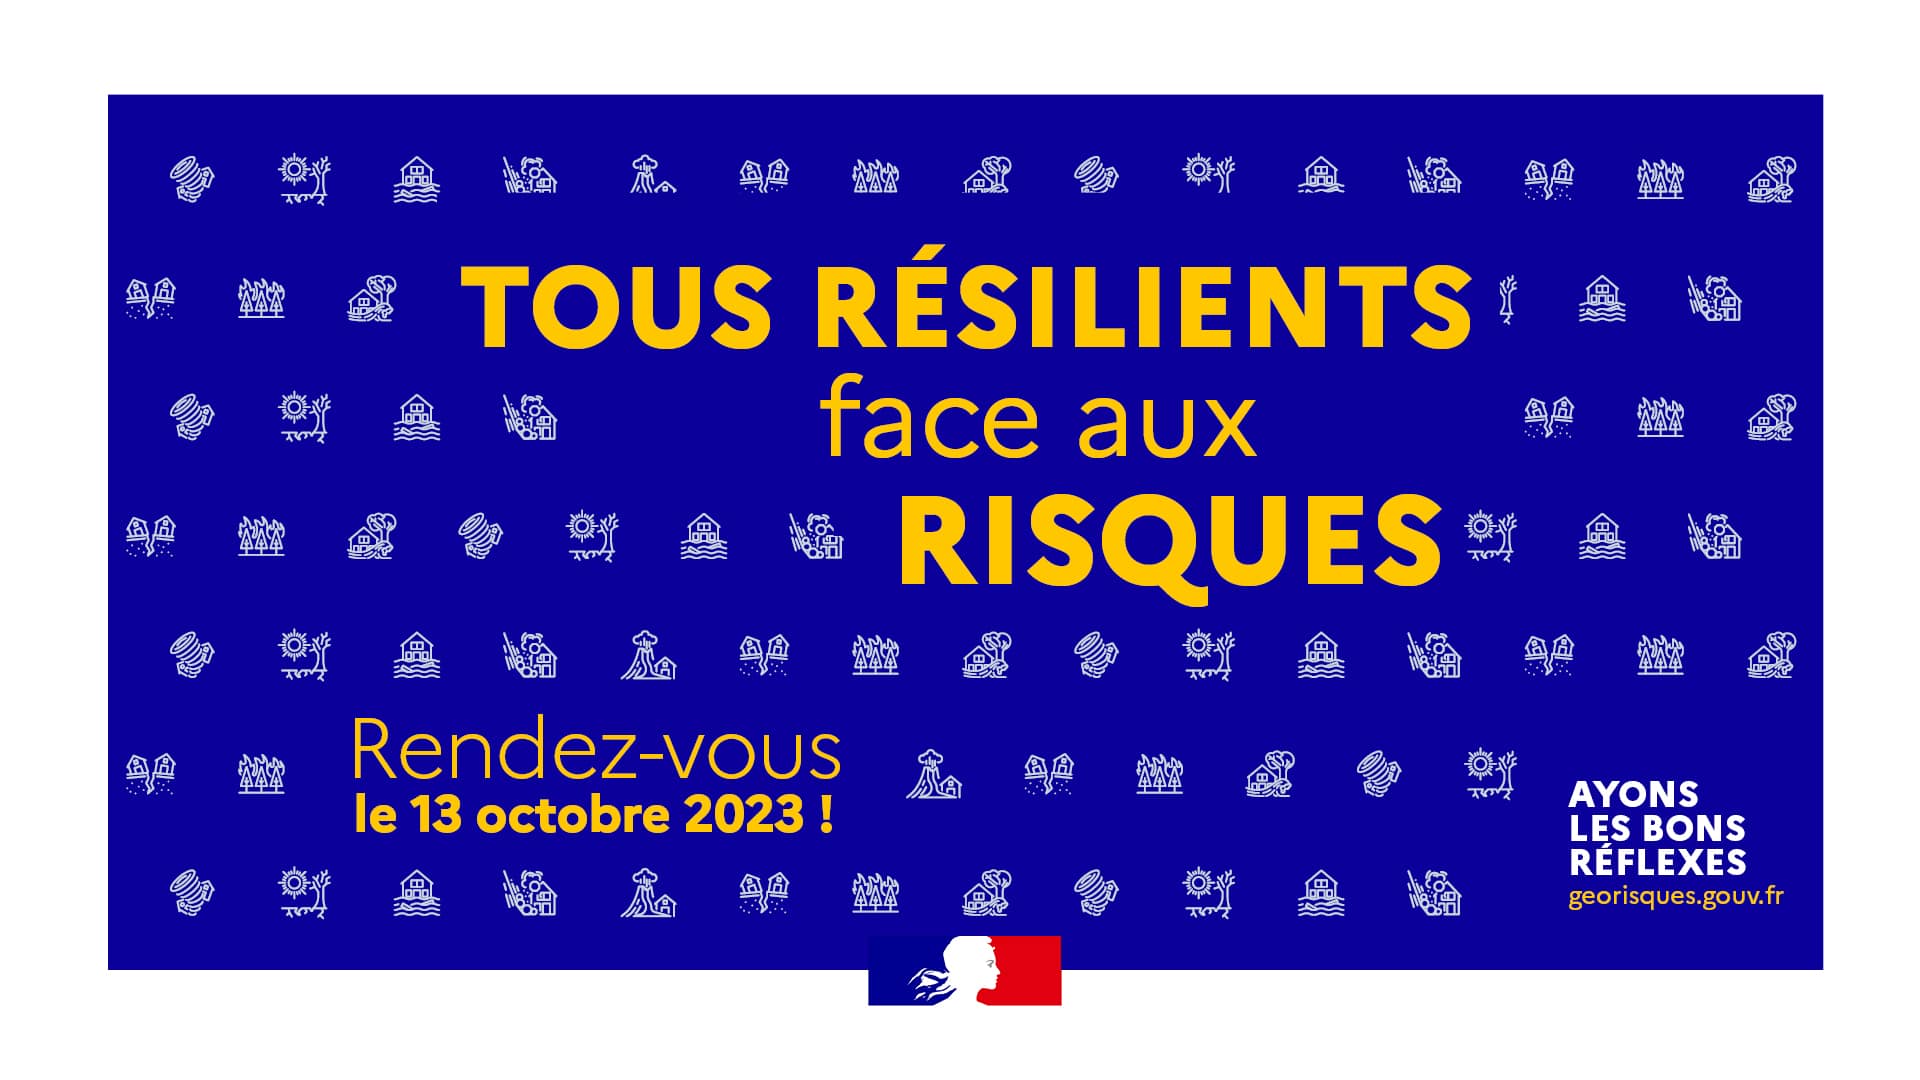 Affiche de campagne de la journée Tous résilients face aux risques du 13 octobre 2023